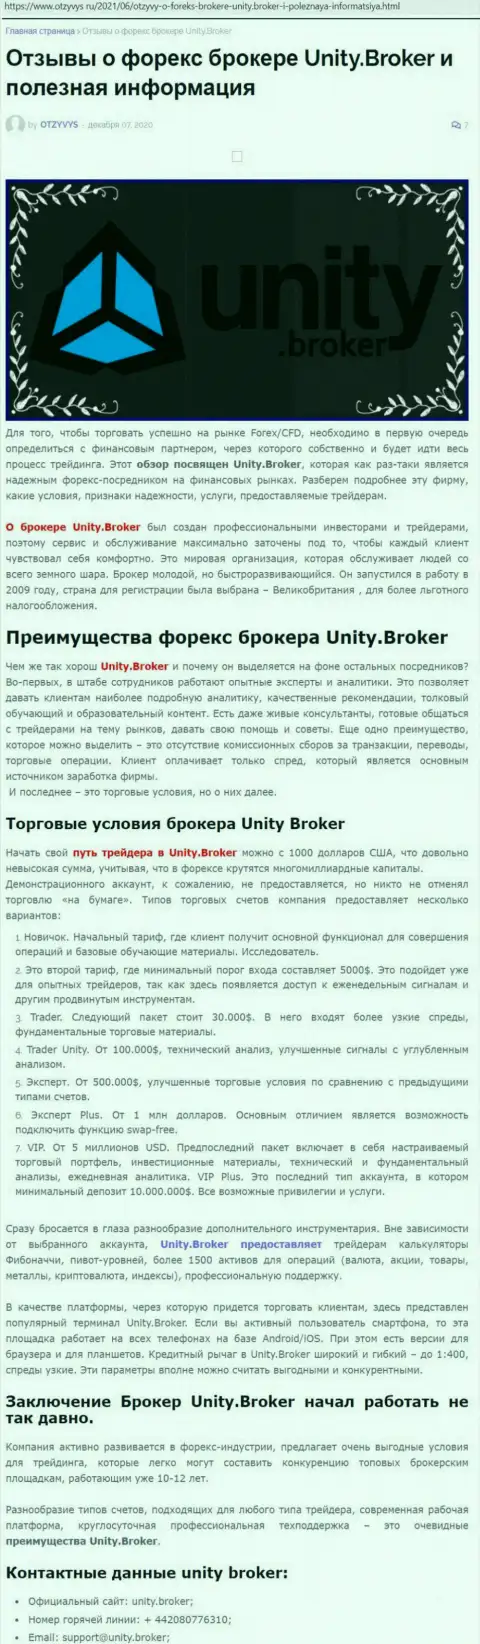 Публикация о ФОРЕКС-брокерской организации Unity Broker на портале Otzyvys Ru